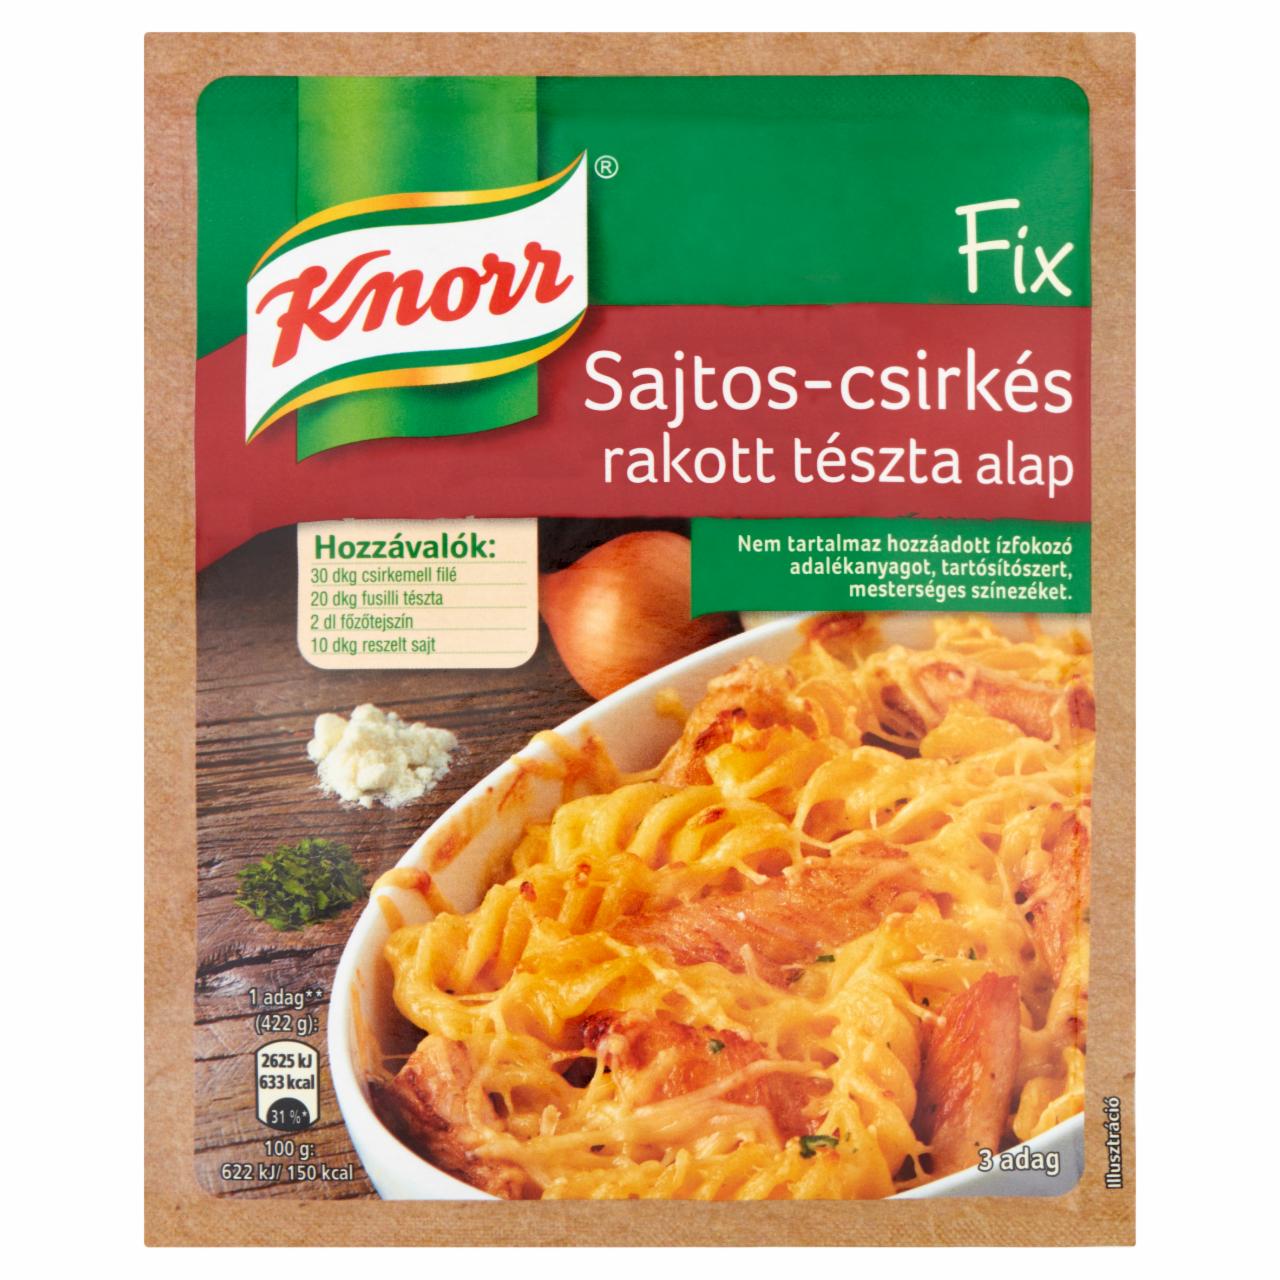 Képek - Knorr Fix sajtos-csirkés rakott tészta alap 45 g